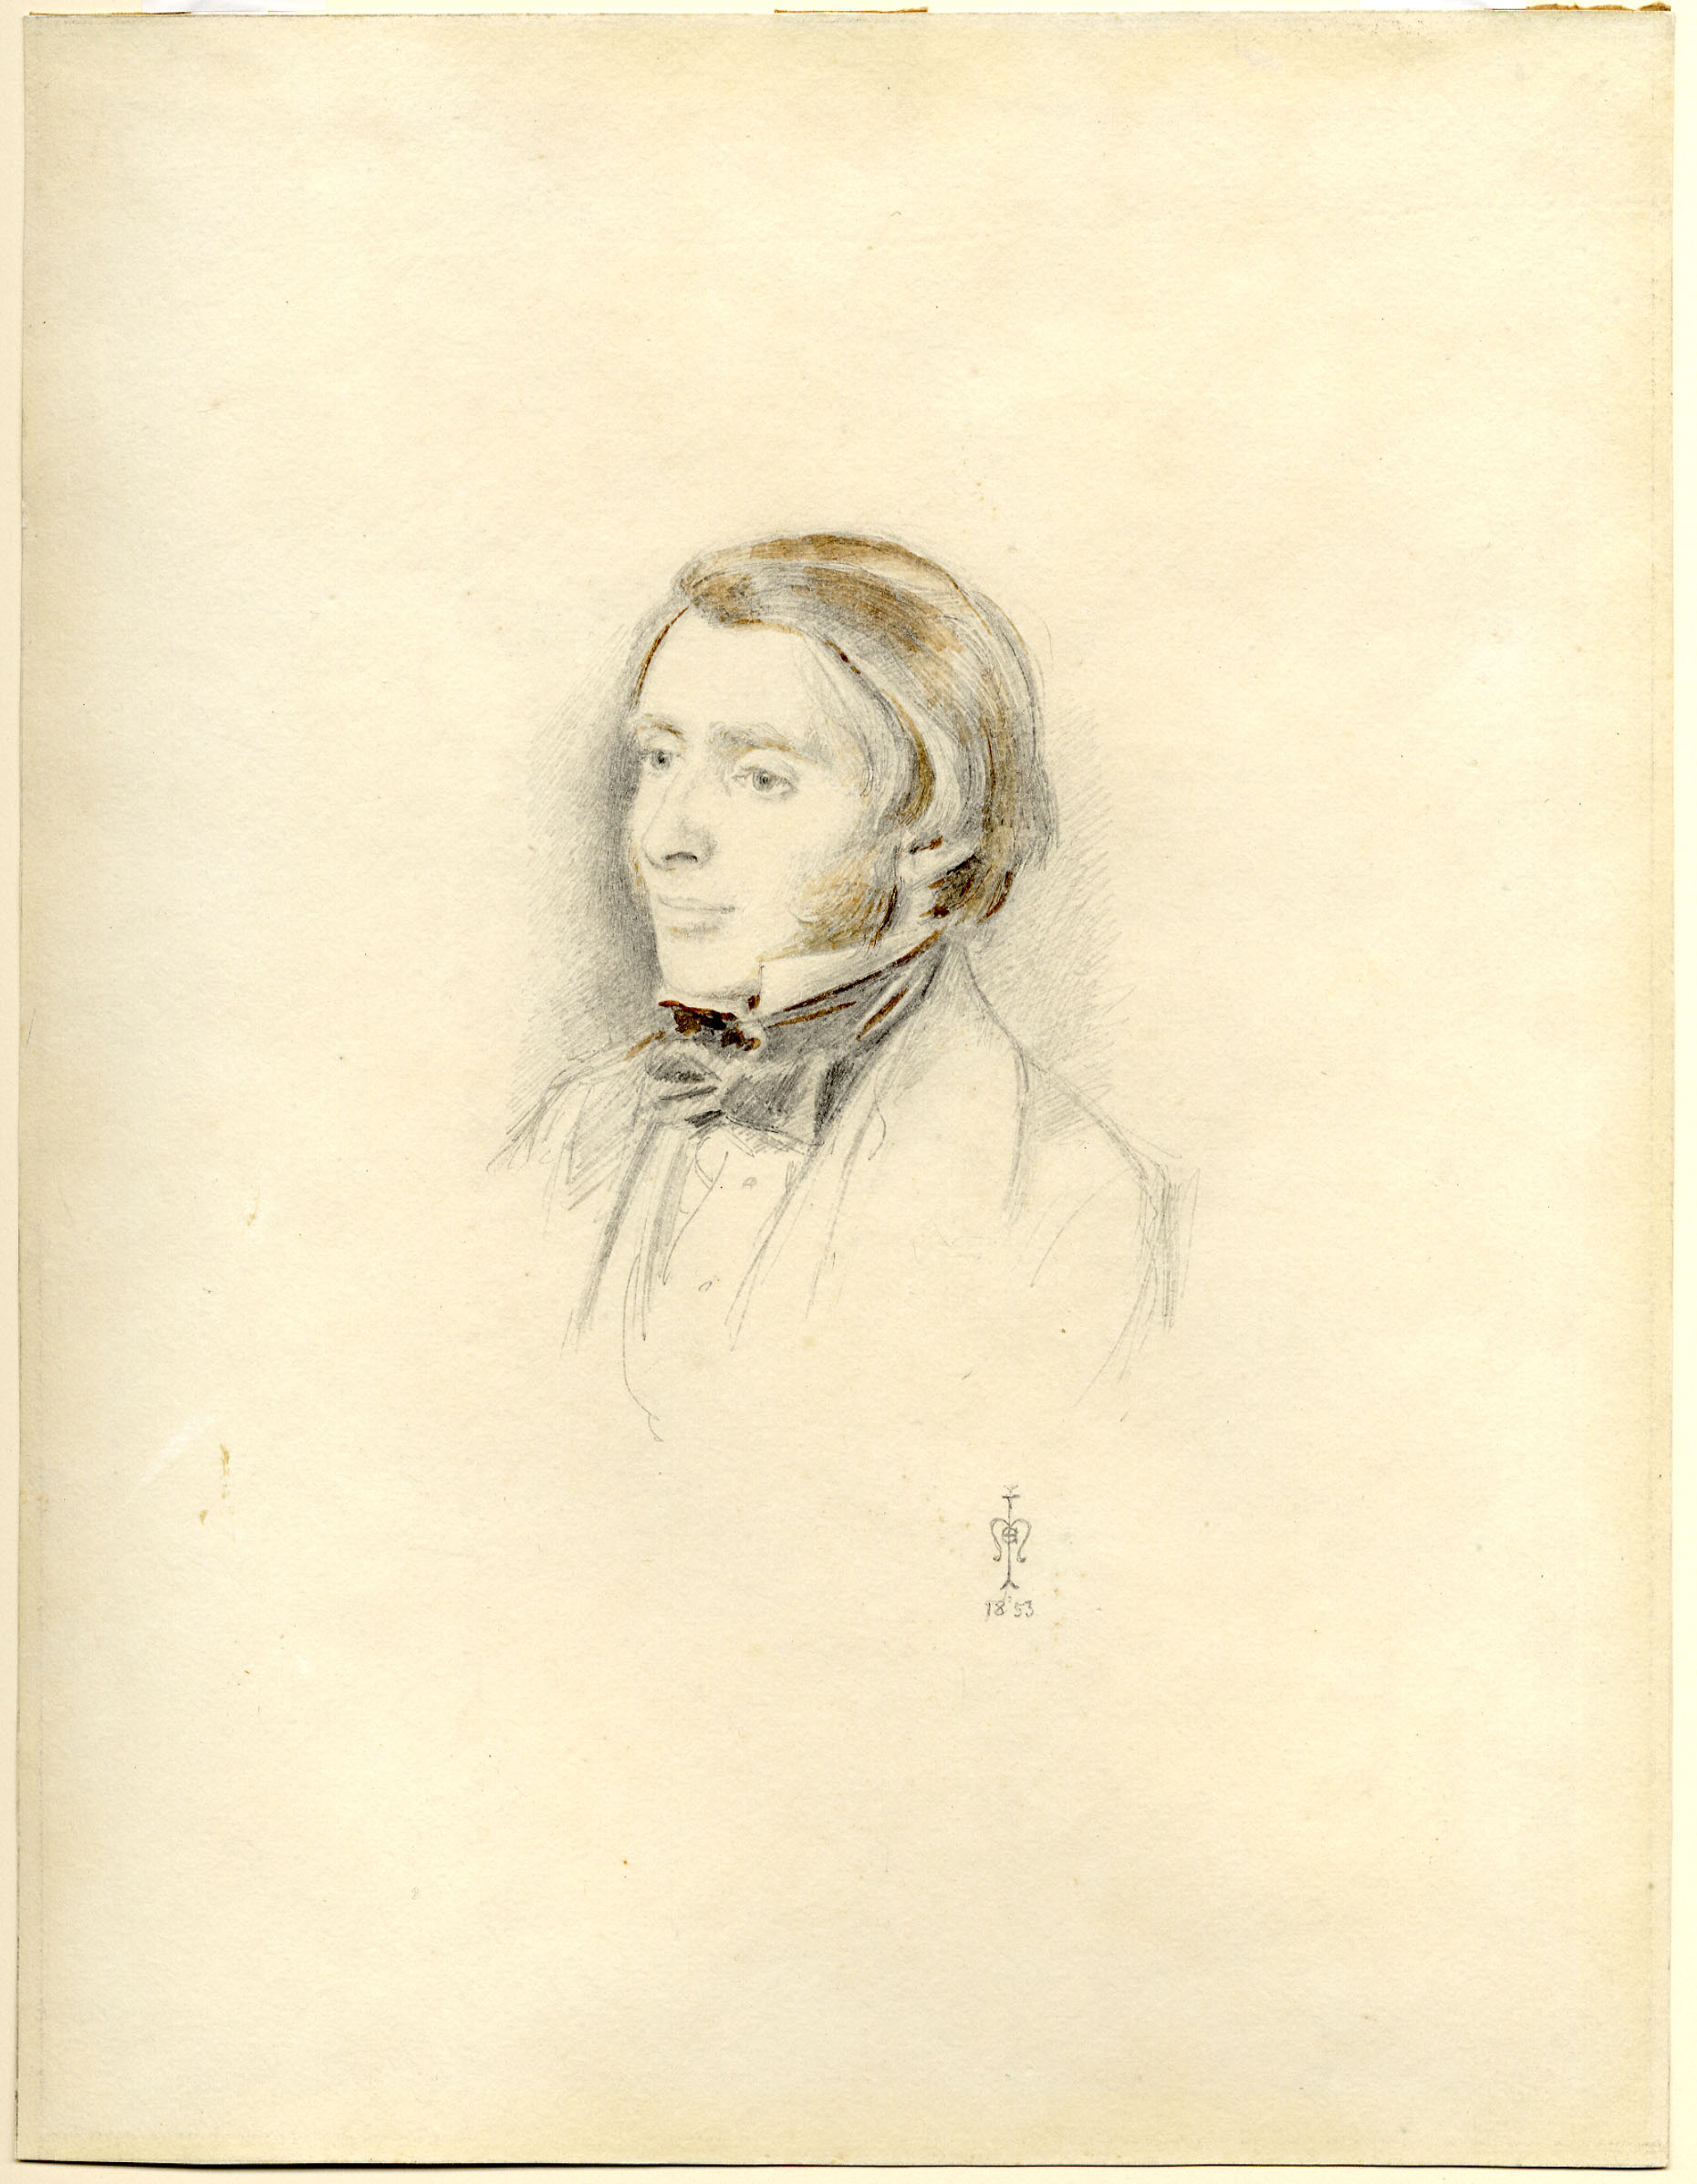 ジョン・エヴァレット・ミレイ《ジョン・ラスキンの肖像》1853年、鉛筆、水彩、33.6×26 cm、 ラスキン財団（ランカスター大学ラスキン・ライブラリー）  ©Ruskin Foundation (Ruskin Library, Lancaster University)